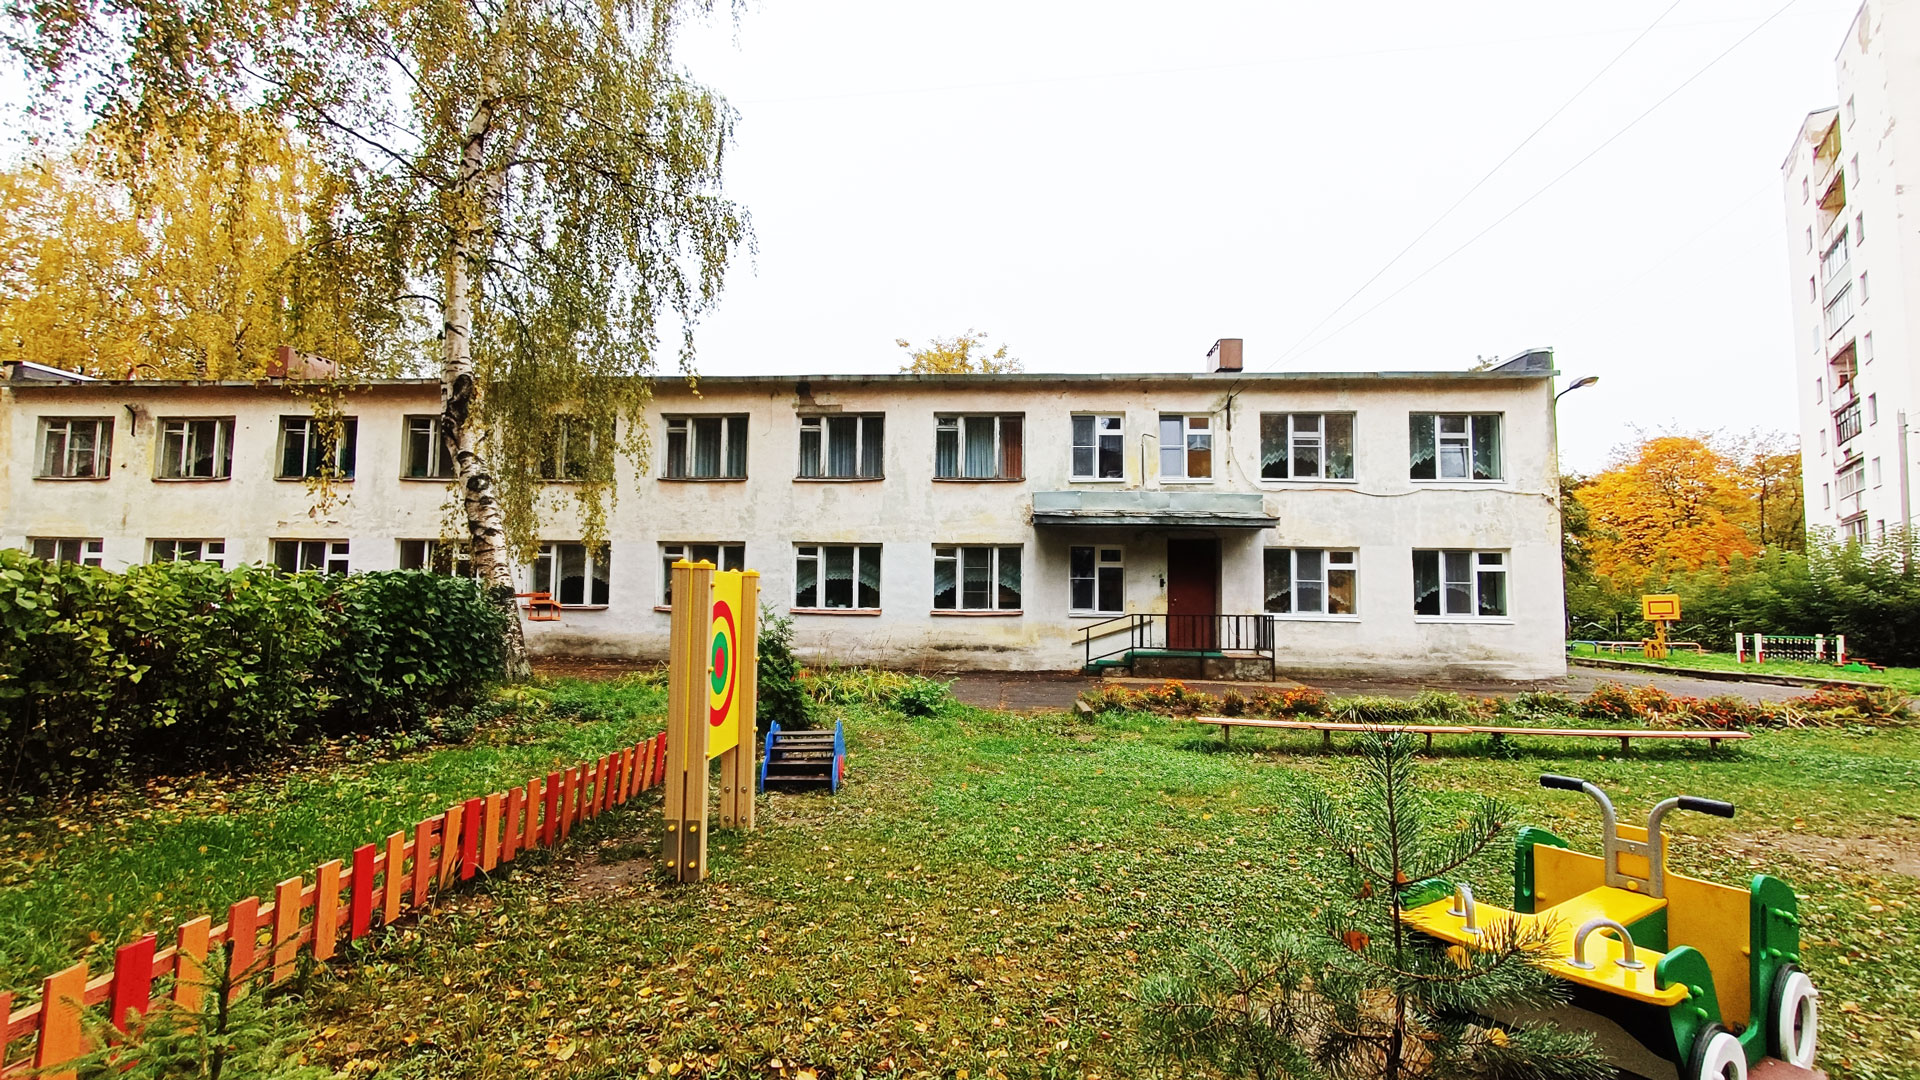 Детский сад 184 Ярославль: общий вид здания.